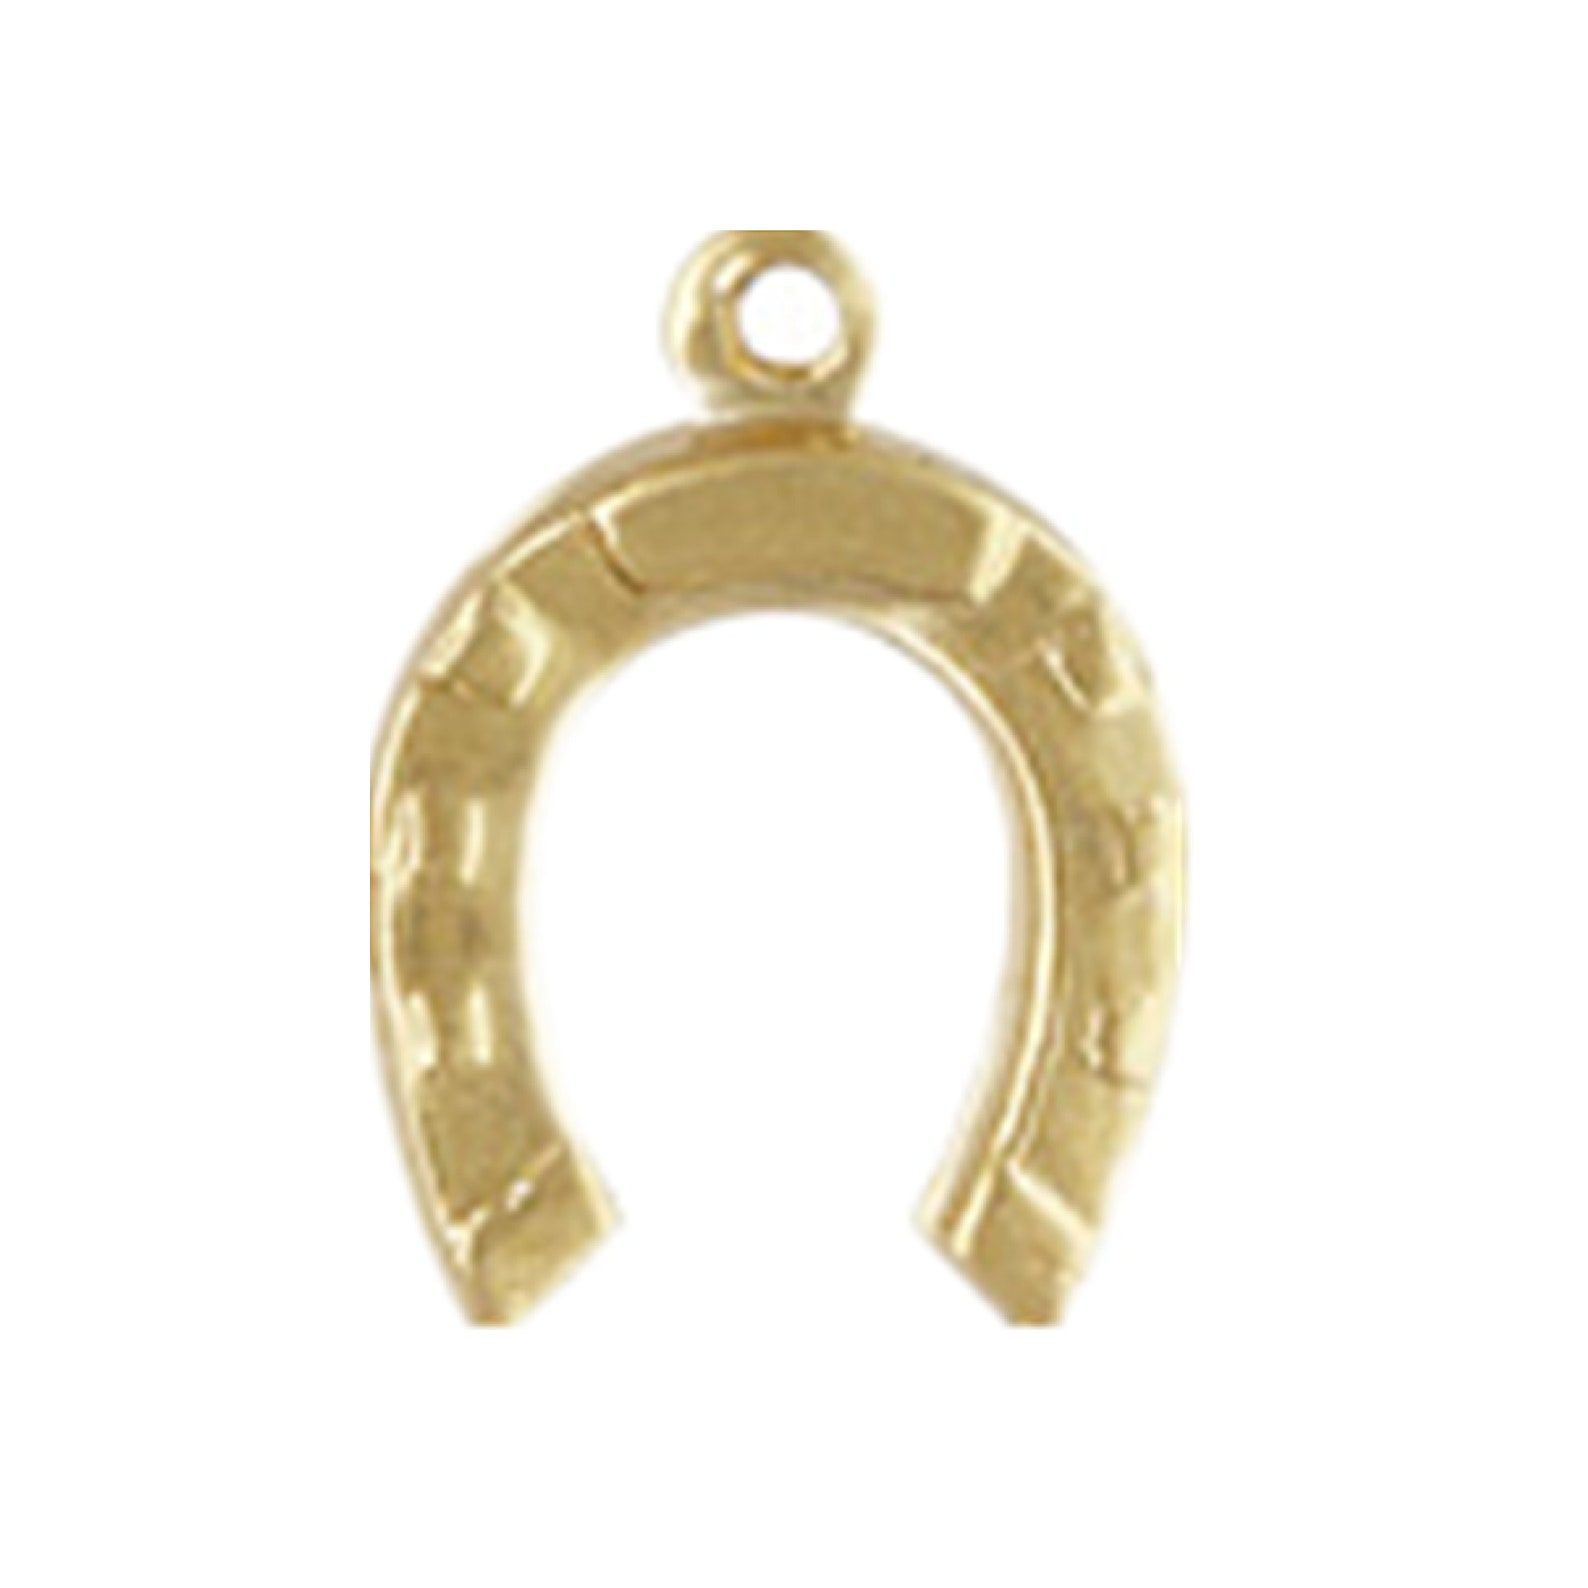 5pcs 14K Gold Filled Horseshoe Charms Small Horseshoe Charm - Etsy